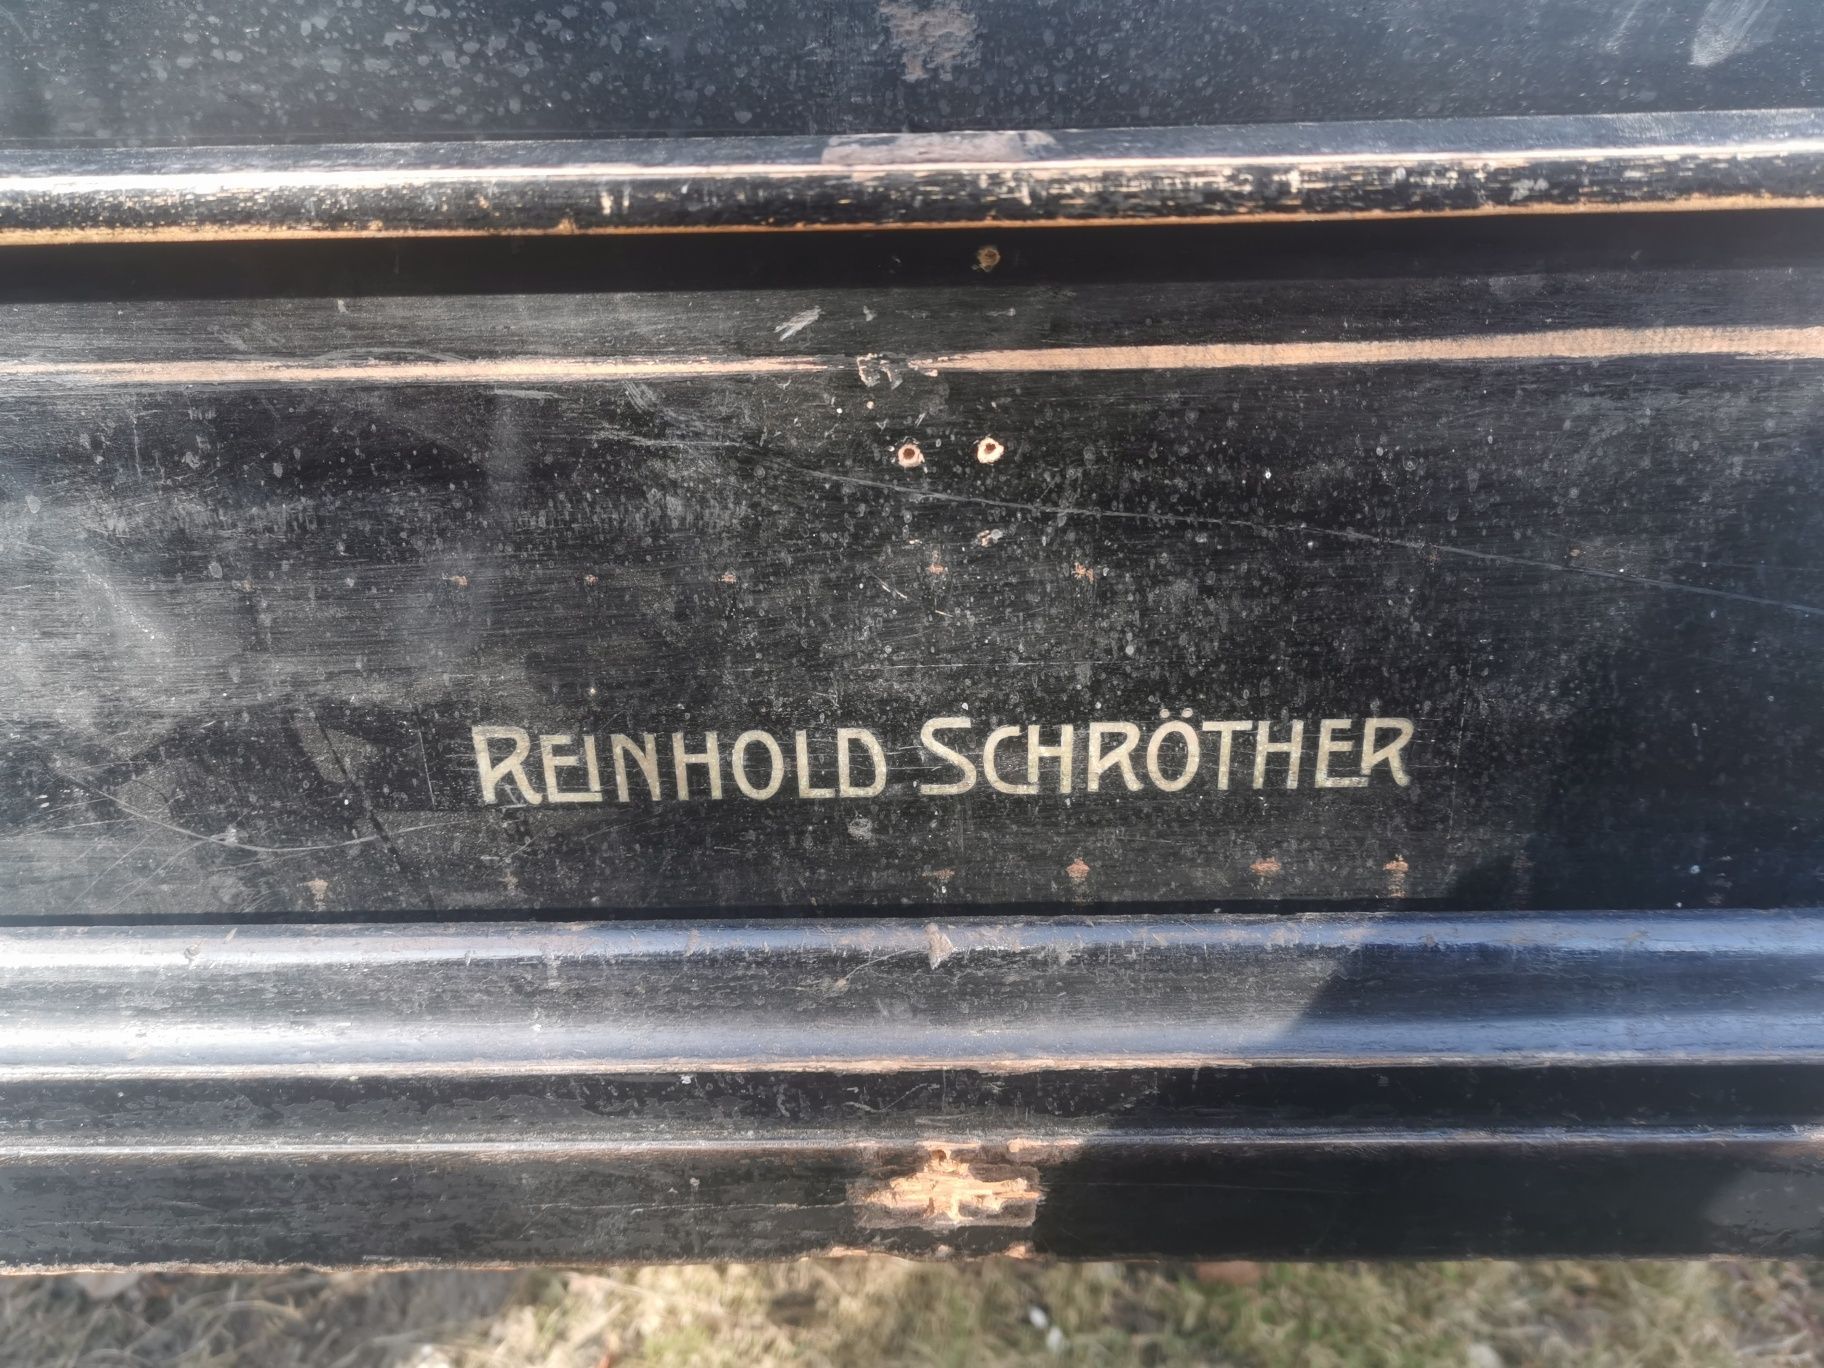 Sprzedam fortepiany reinhold schrother